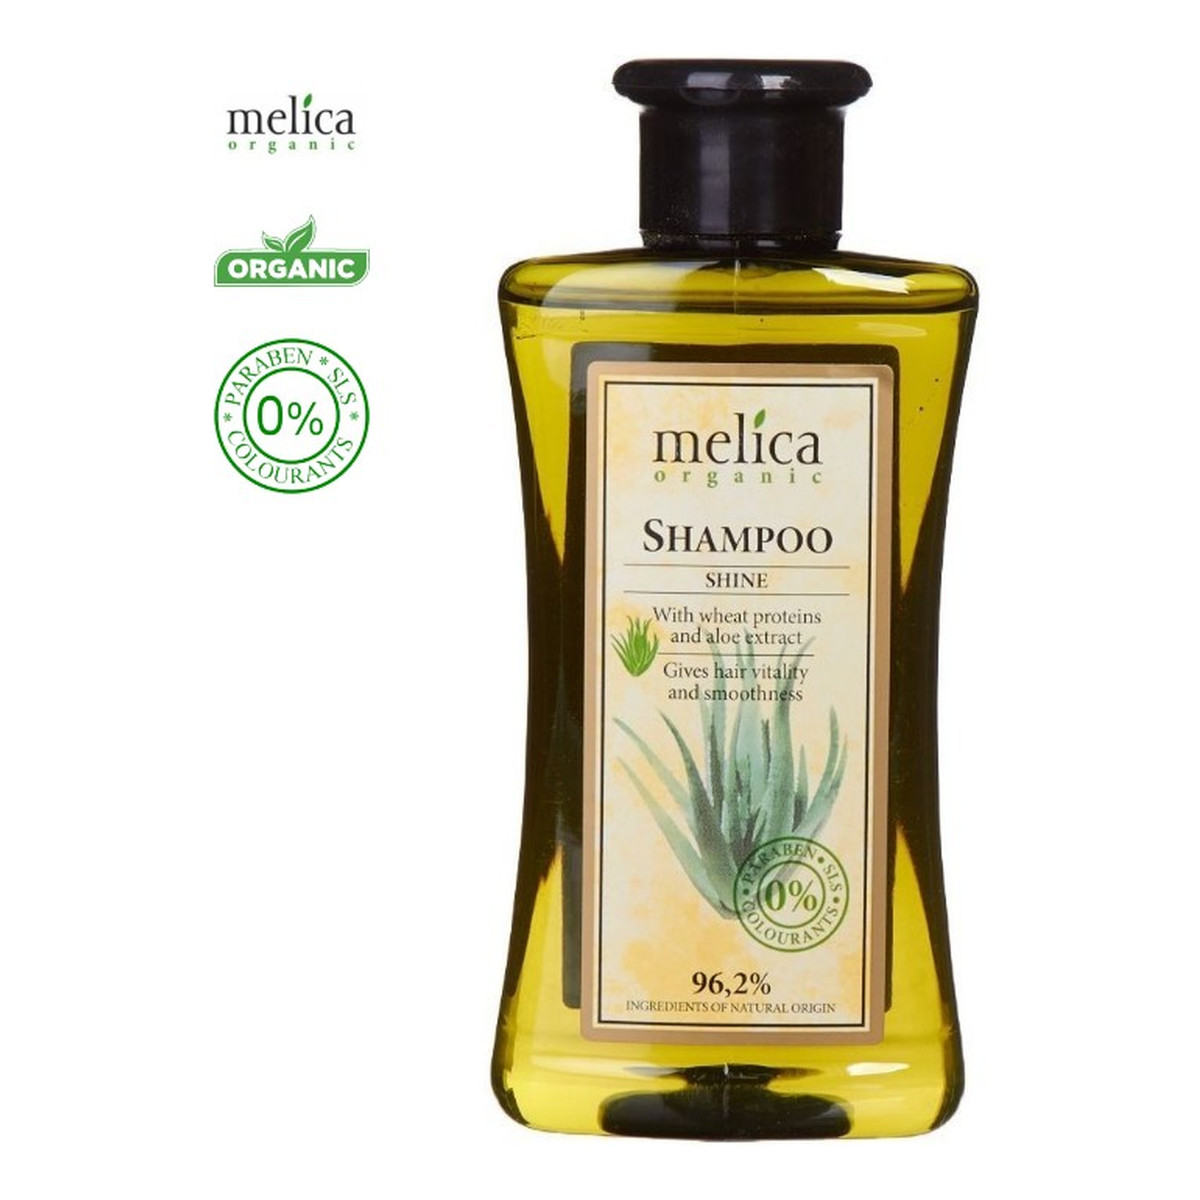 Melica Organic Szampon organiczny do włosów 300ml